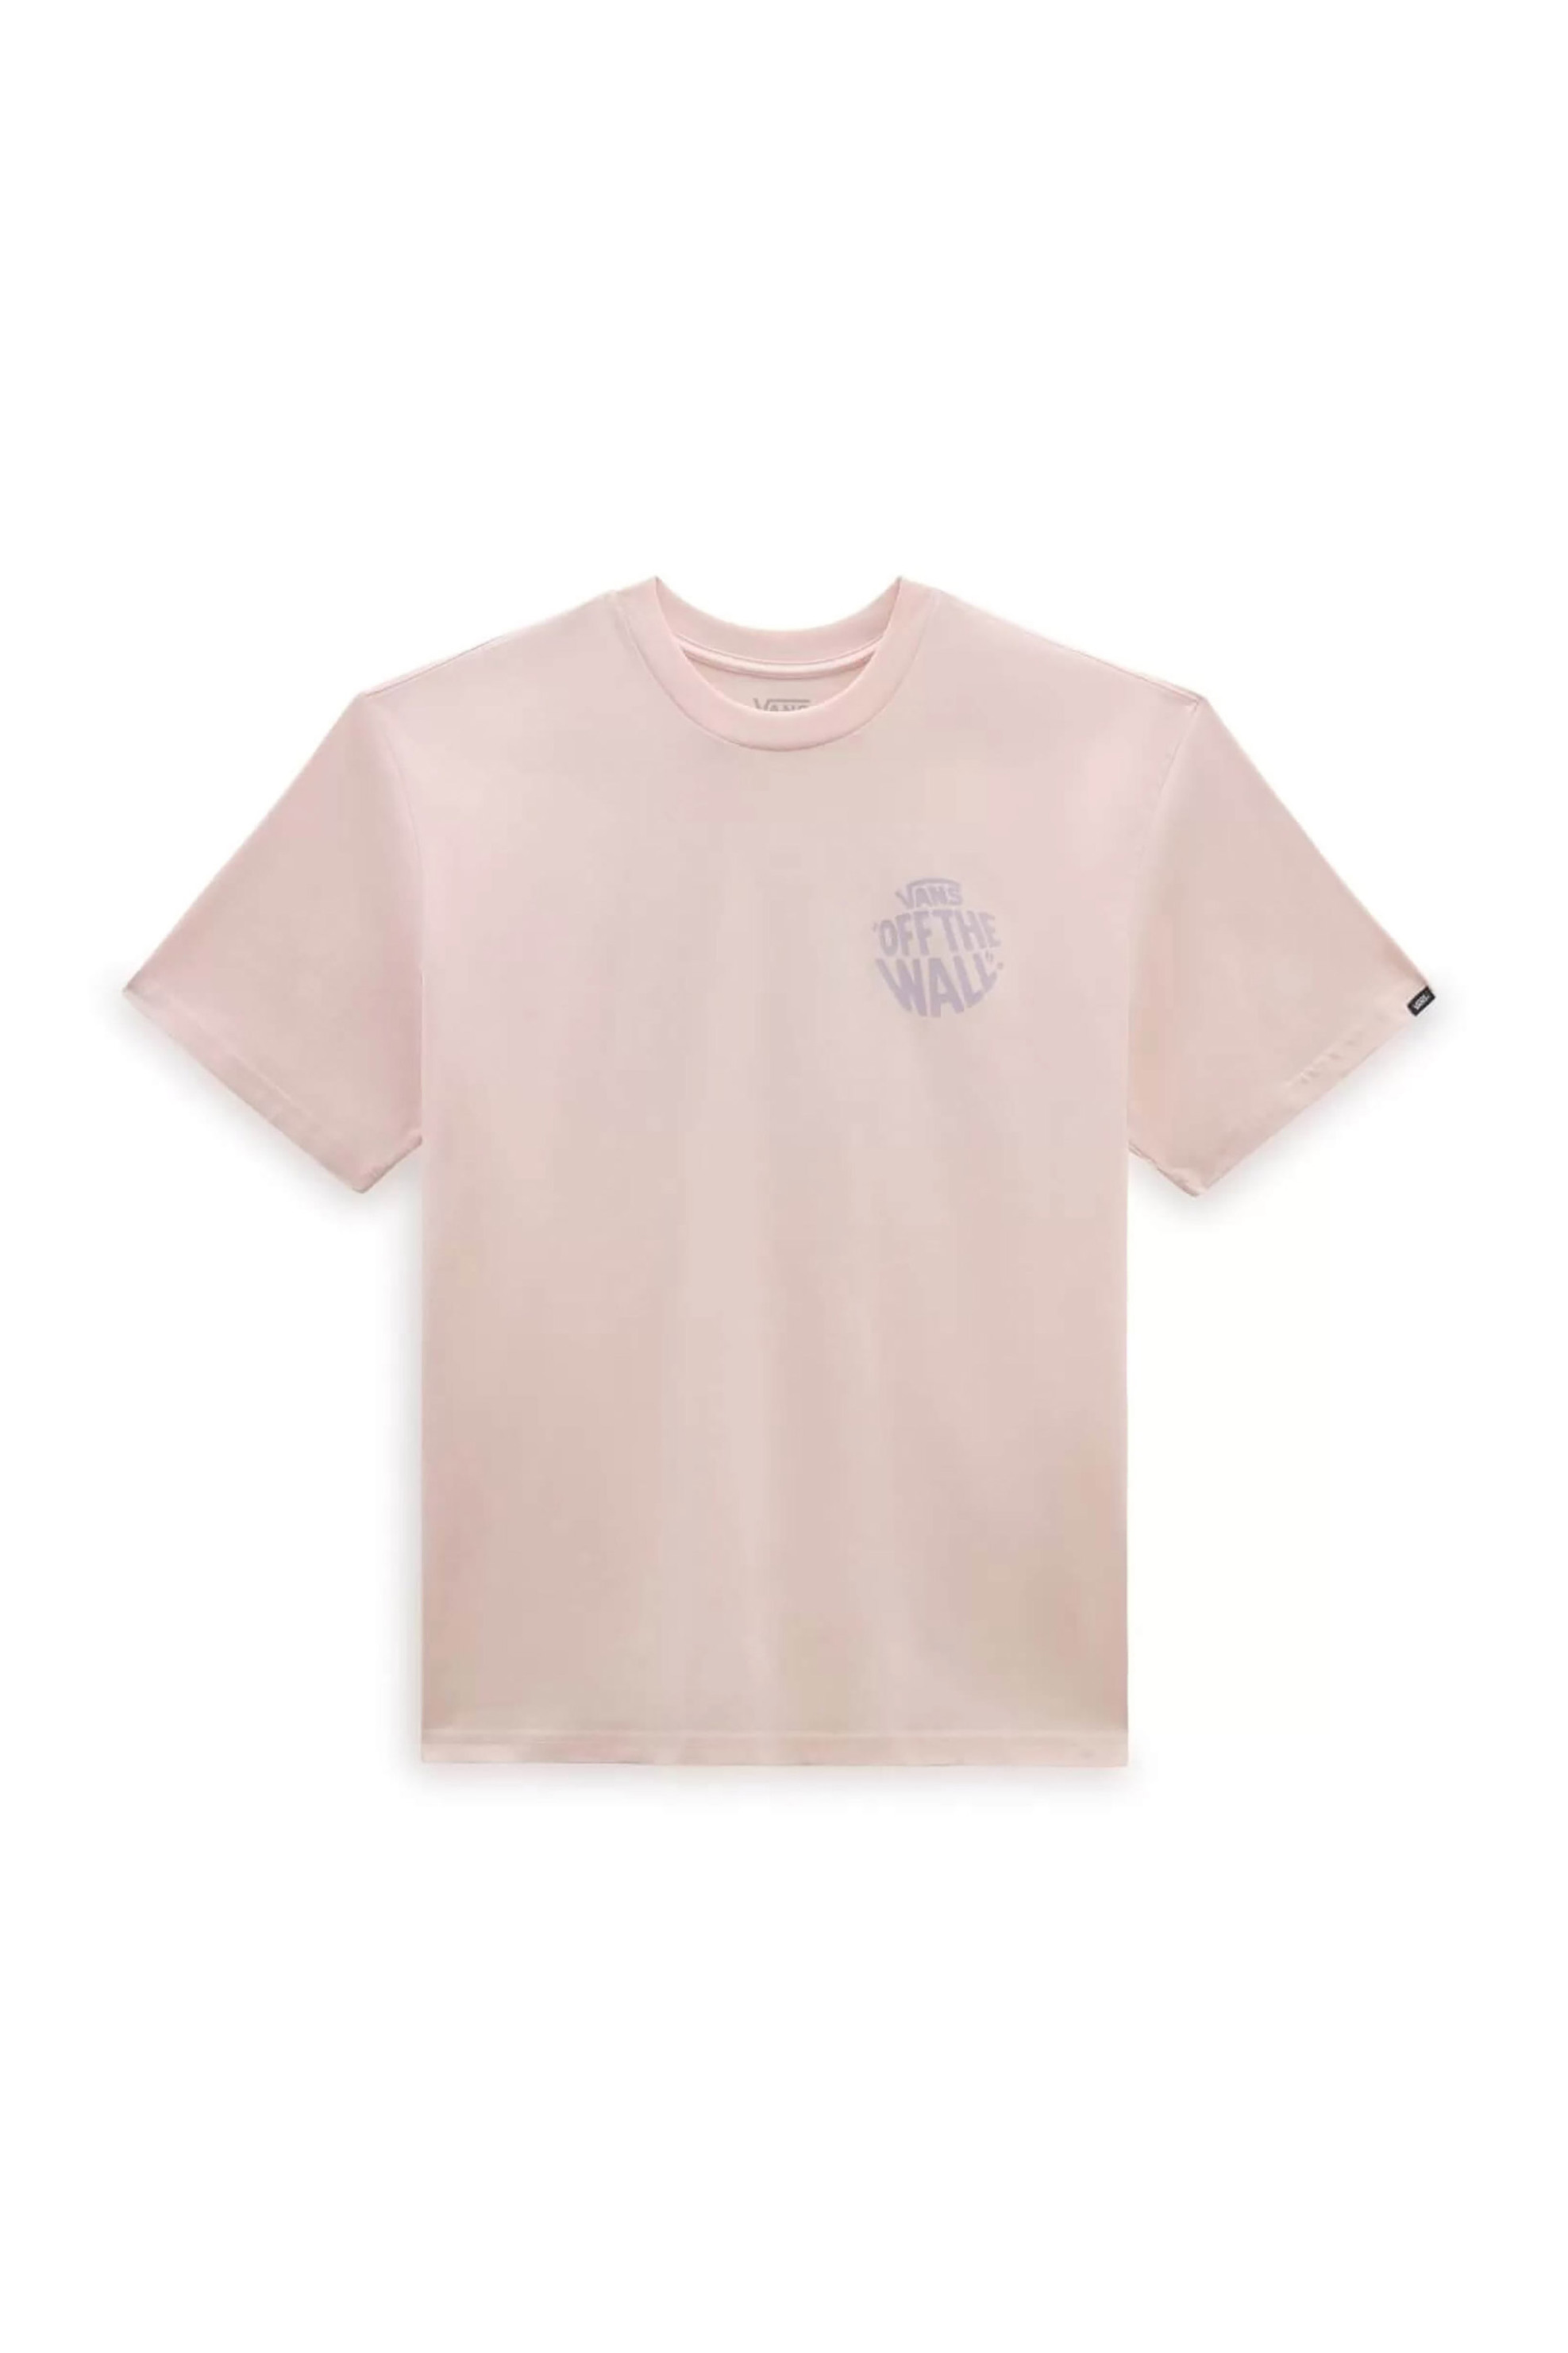 Ανδρική Μόδα > Ανδρικά Ρούχα > Ανδρικές Μπλούζες > Ανδρικά T-Shirts Vans ανδρικό T-shirt με print "Circle" - VN000H5NCHN1 Ροζ